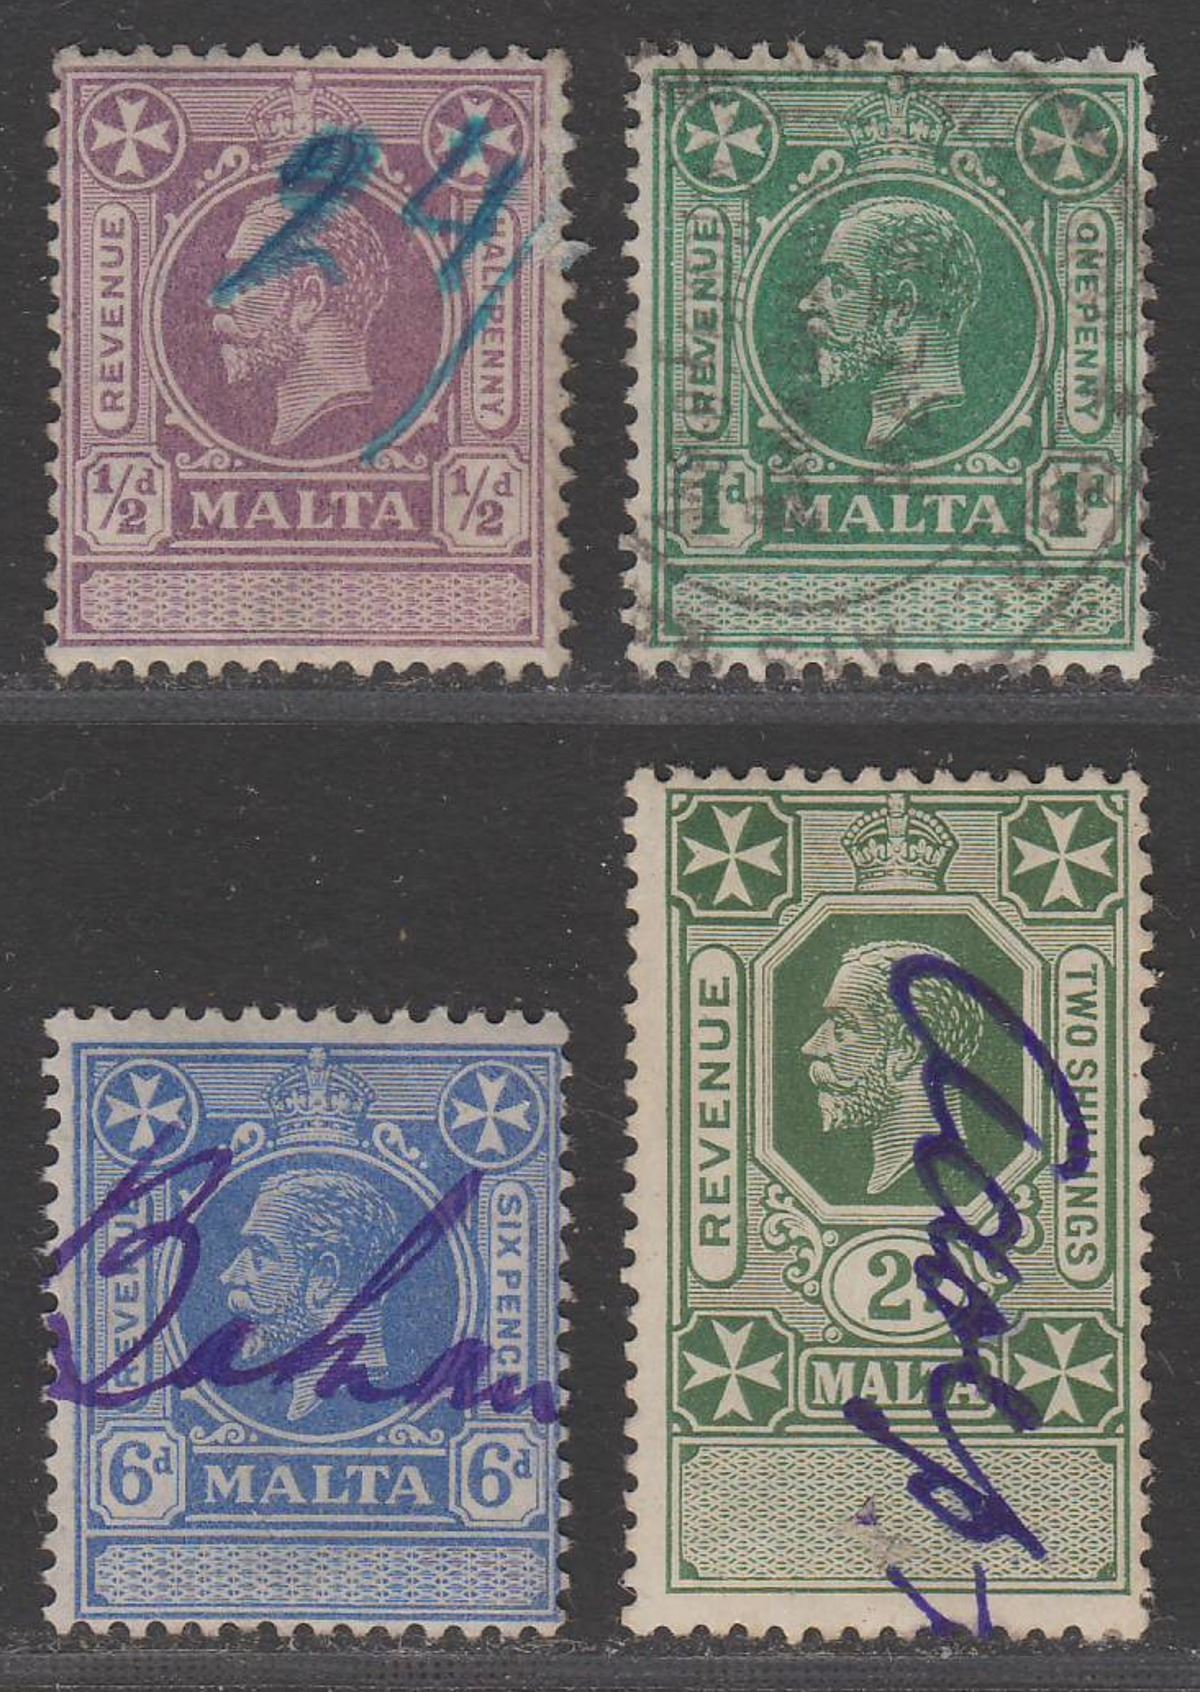 Malta 1925 King George V Revenue ½d, 1d, 6d. 2sh Used